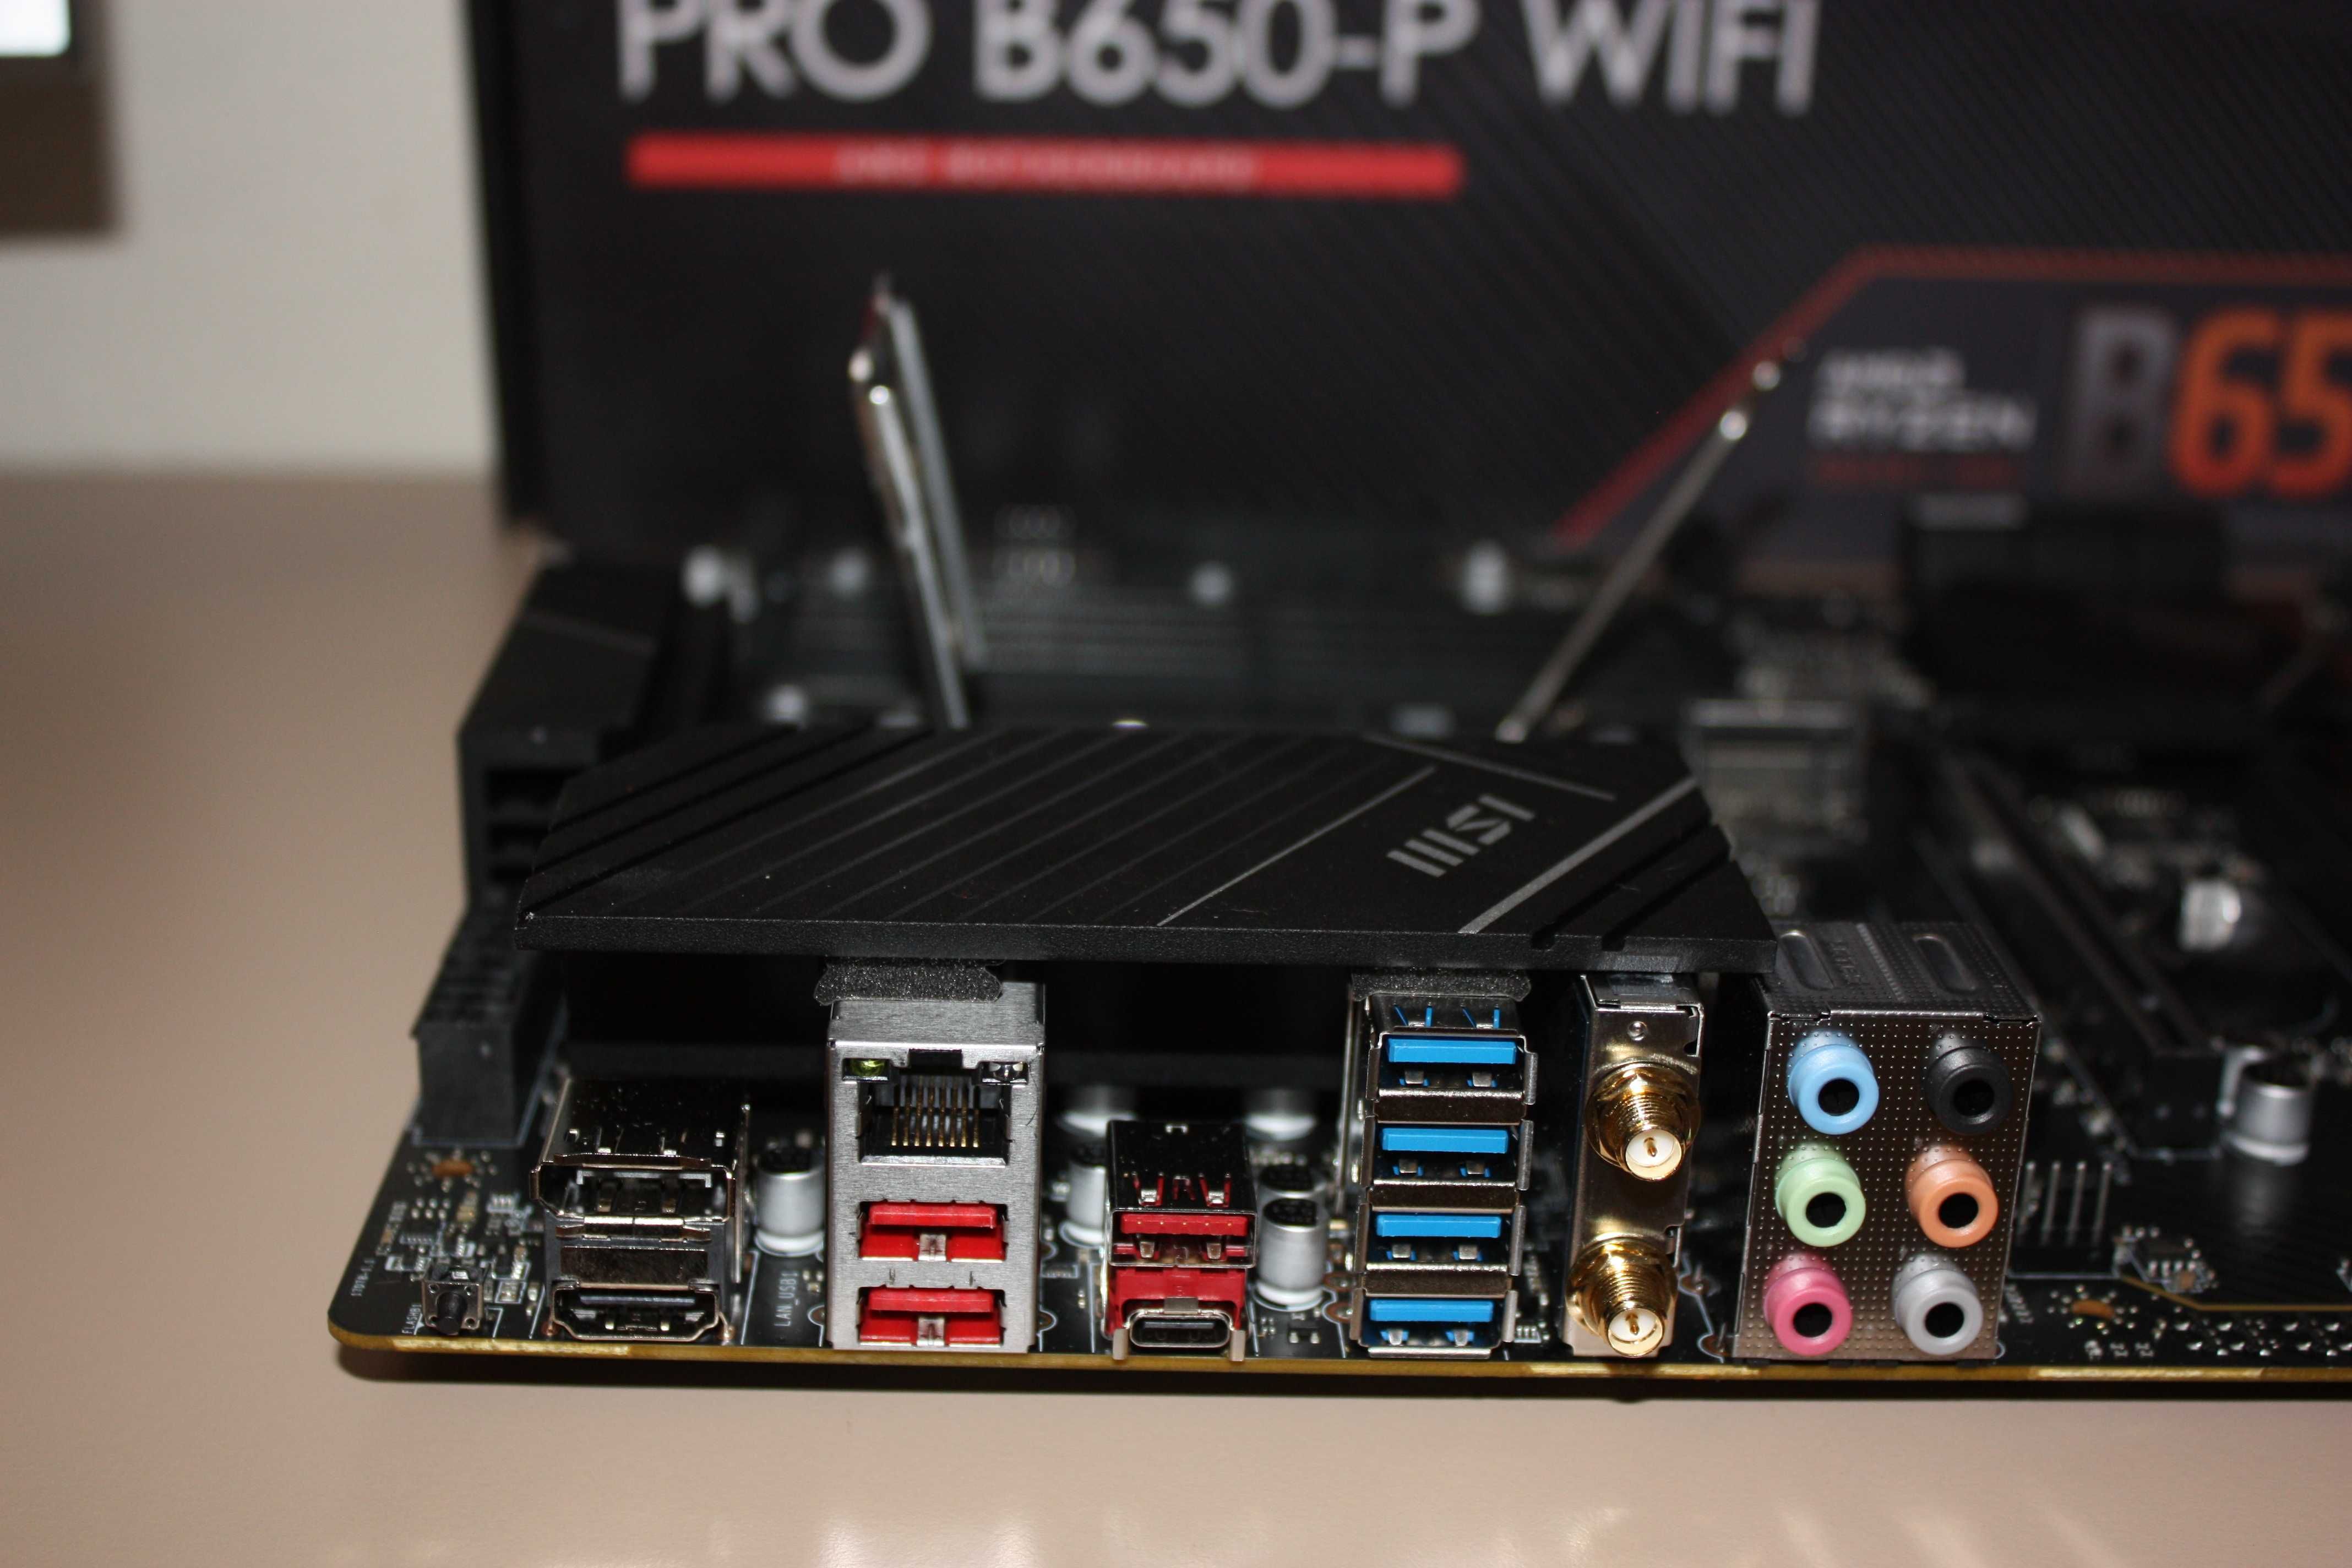 MSI Pro B650-P WiFi